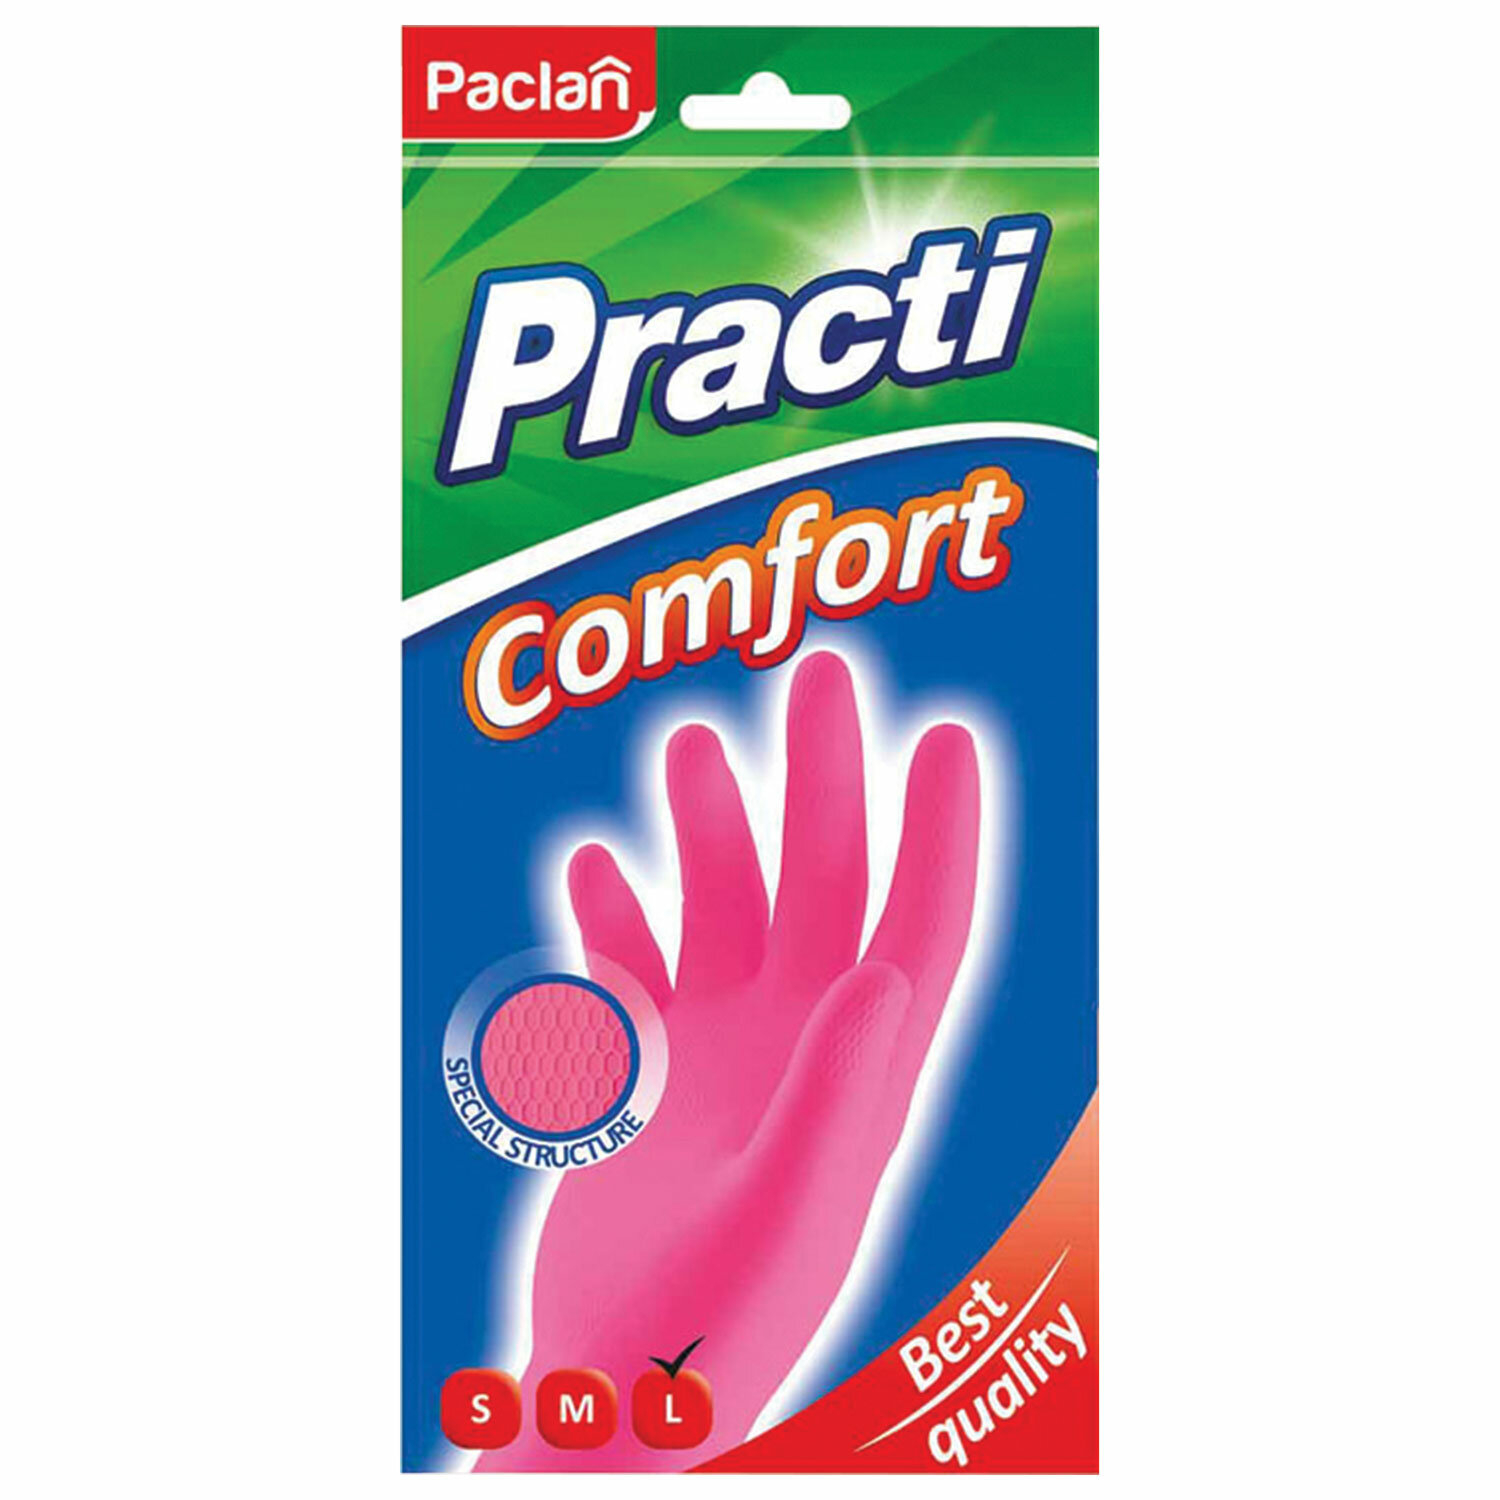 перчатки резиновые paclan extra dry Перчатки резиновые Paclan extra dry размер L 1 пара в ассортименте